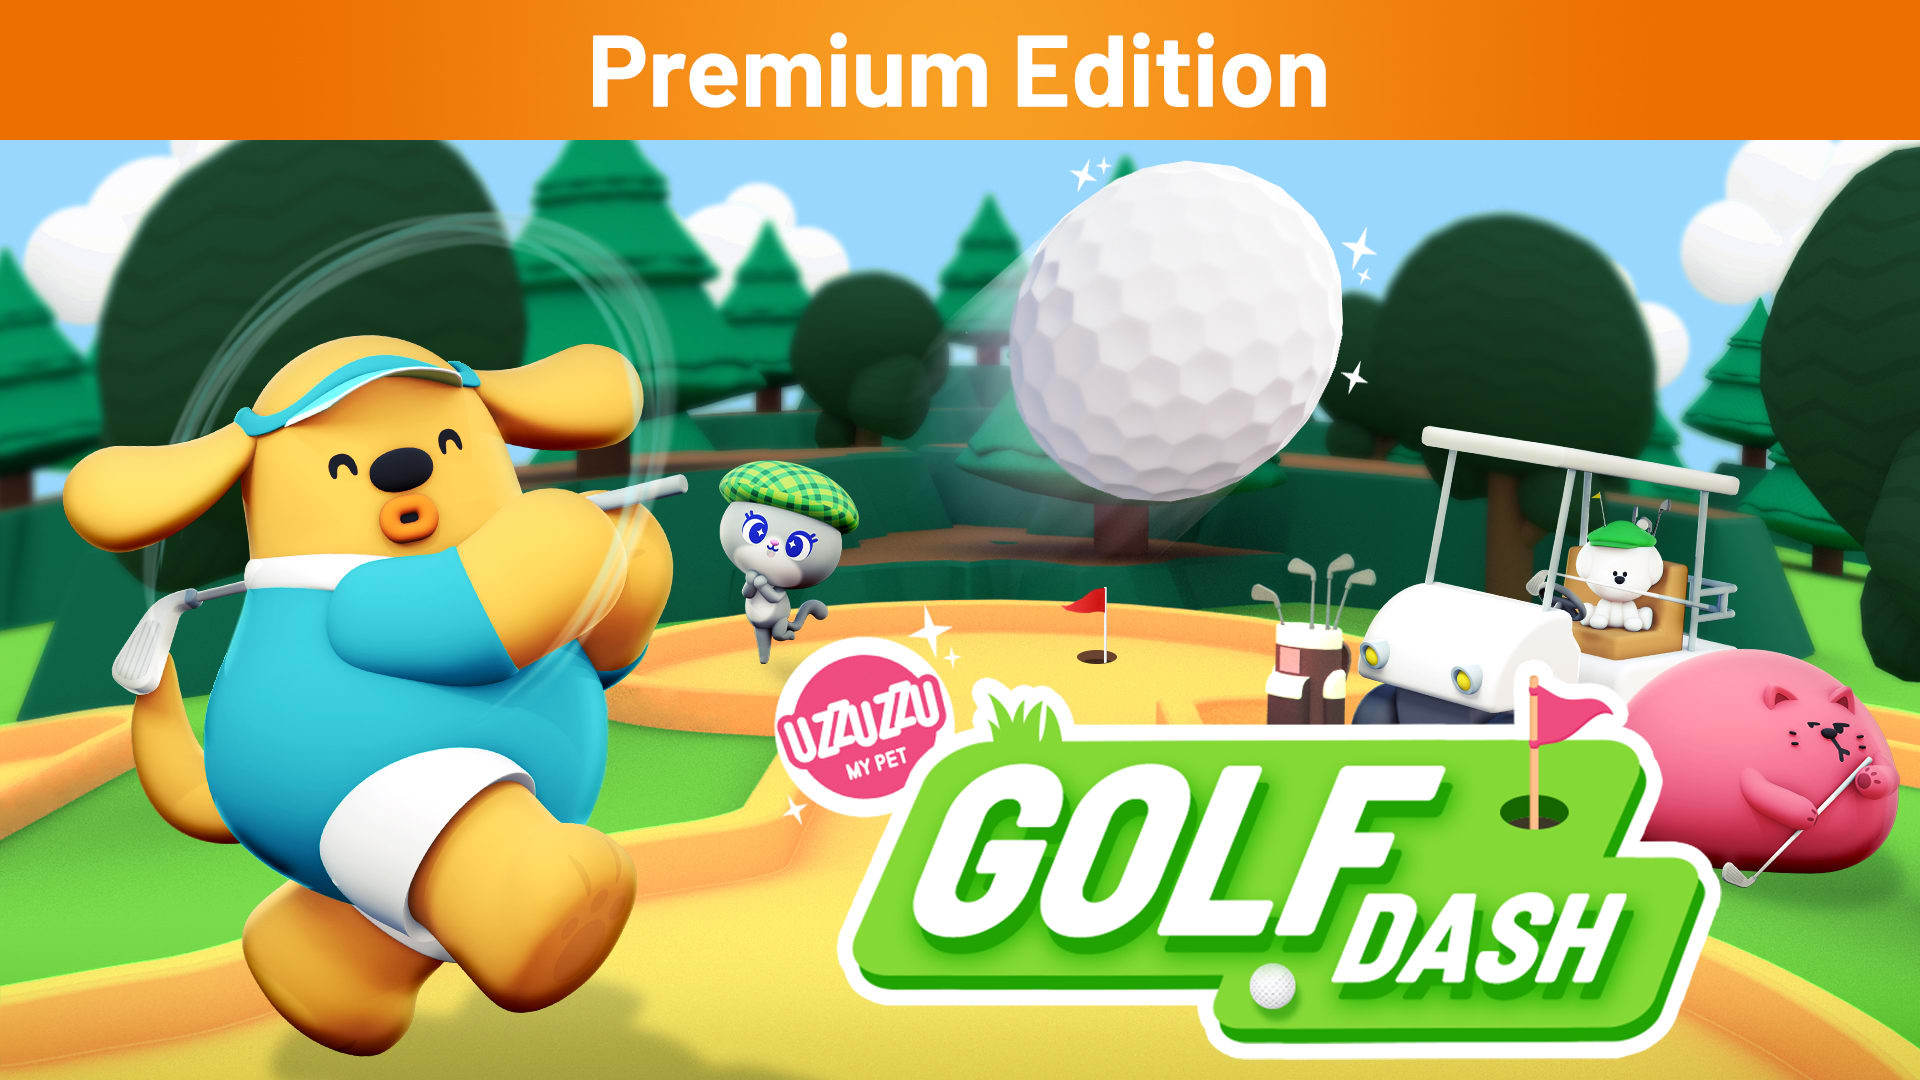 Uzzuzzu My Pet - Golf Dash Premium Edition